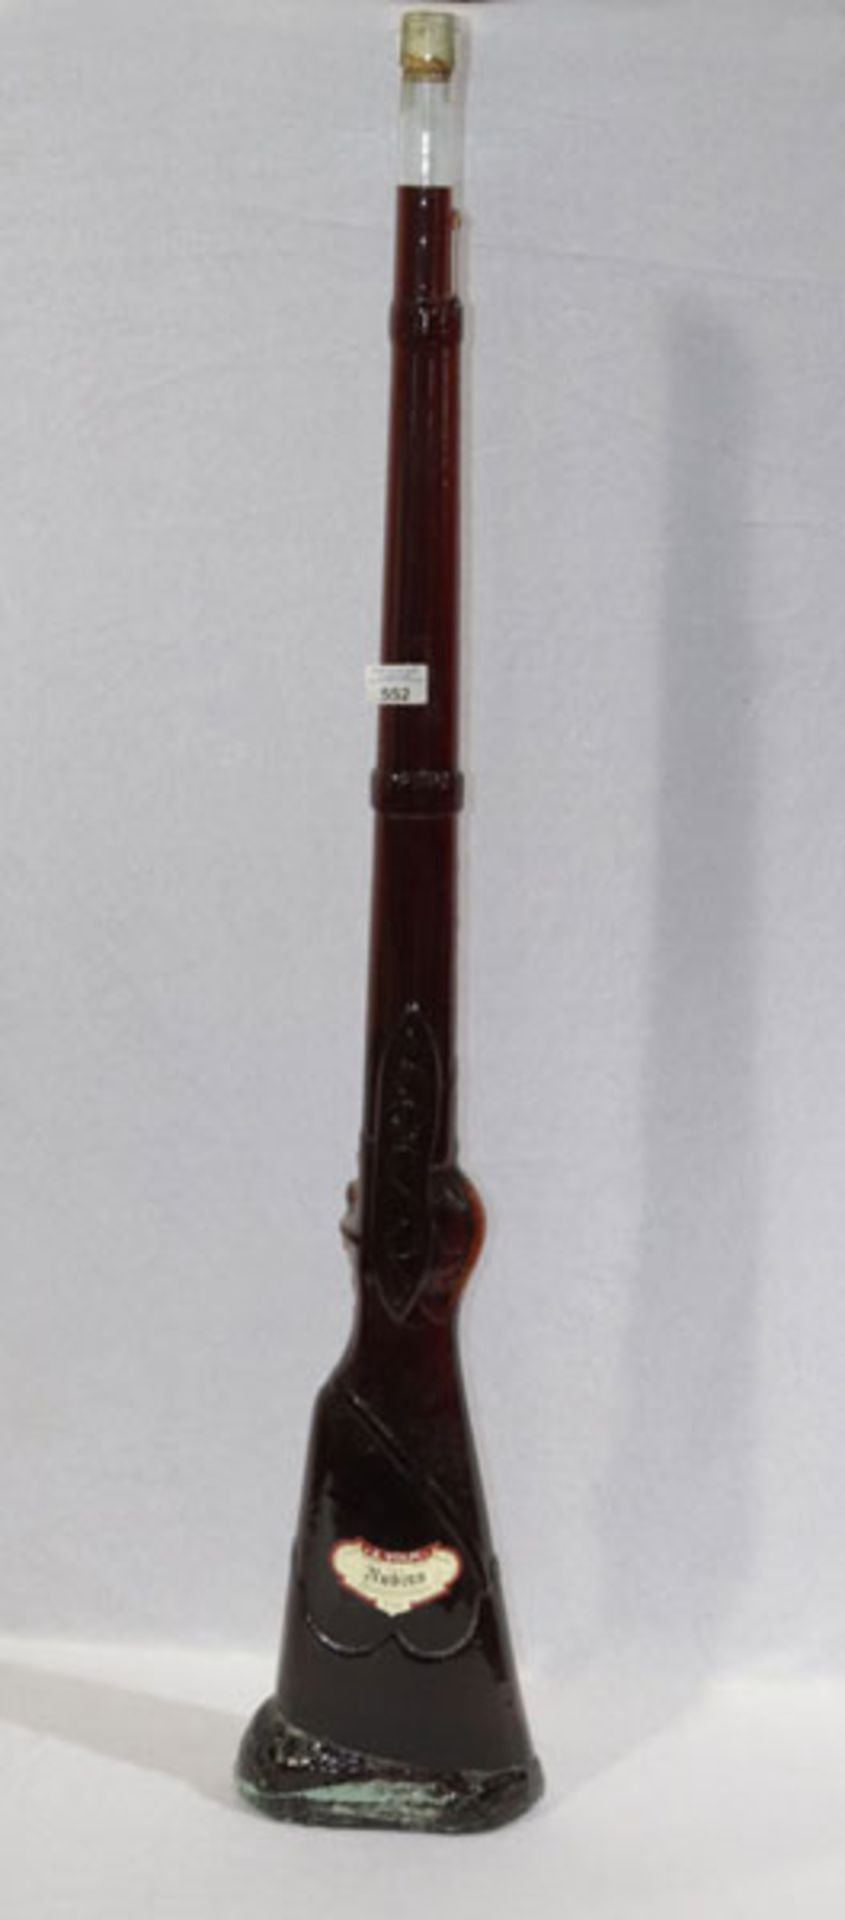 Flasche in Gewehrform, gefüllt mit Rubino, Bozen, Italien, H 115 cm, B 21 cm, T 10 cm, Abholung oder